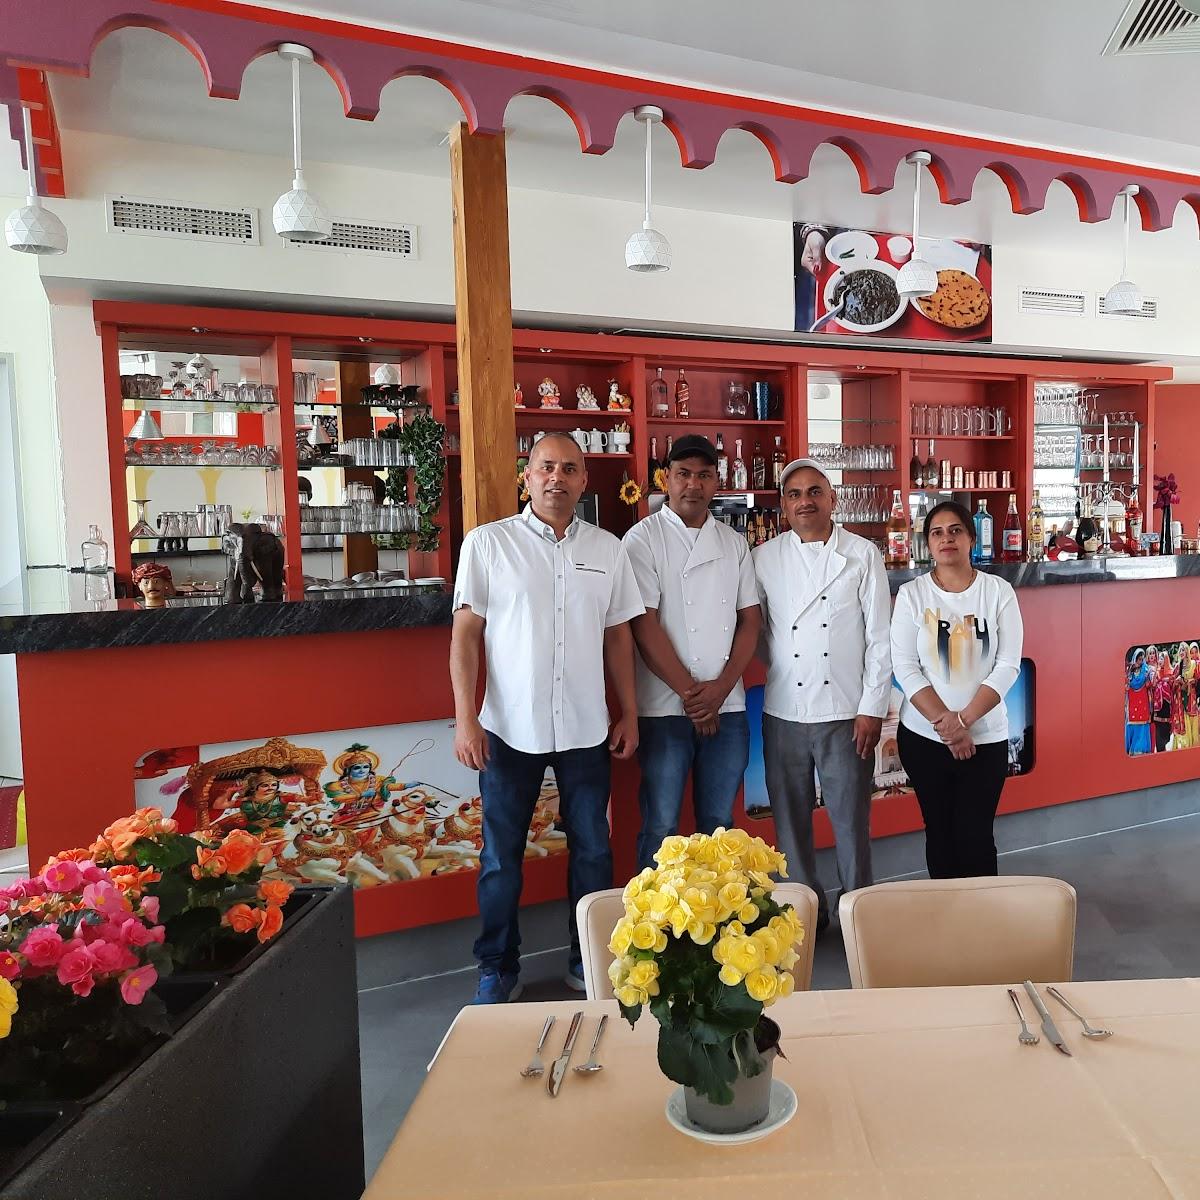 Restaurant "Himalaya Indisches Restaurant im Citycenter" in Rathenow